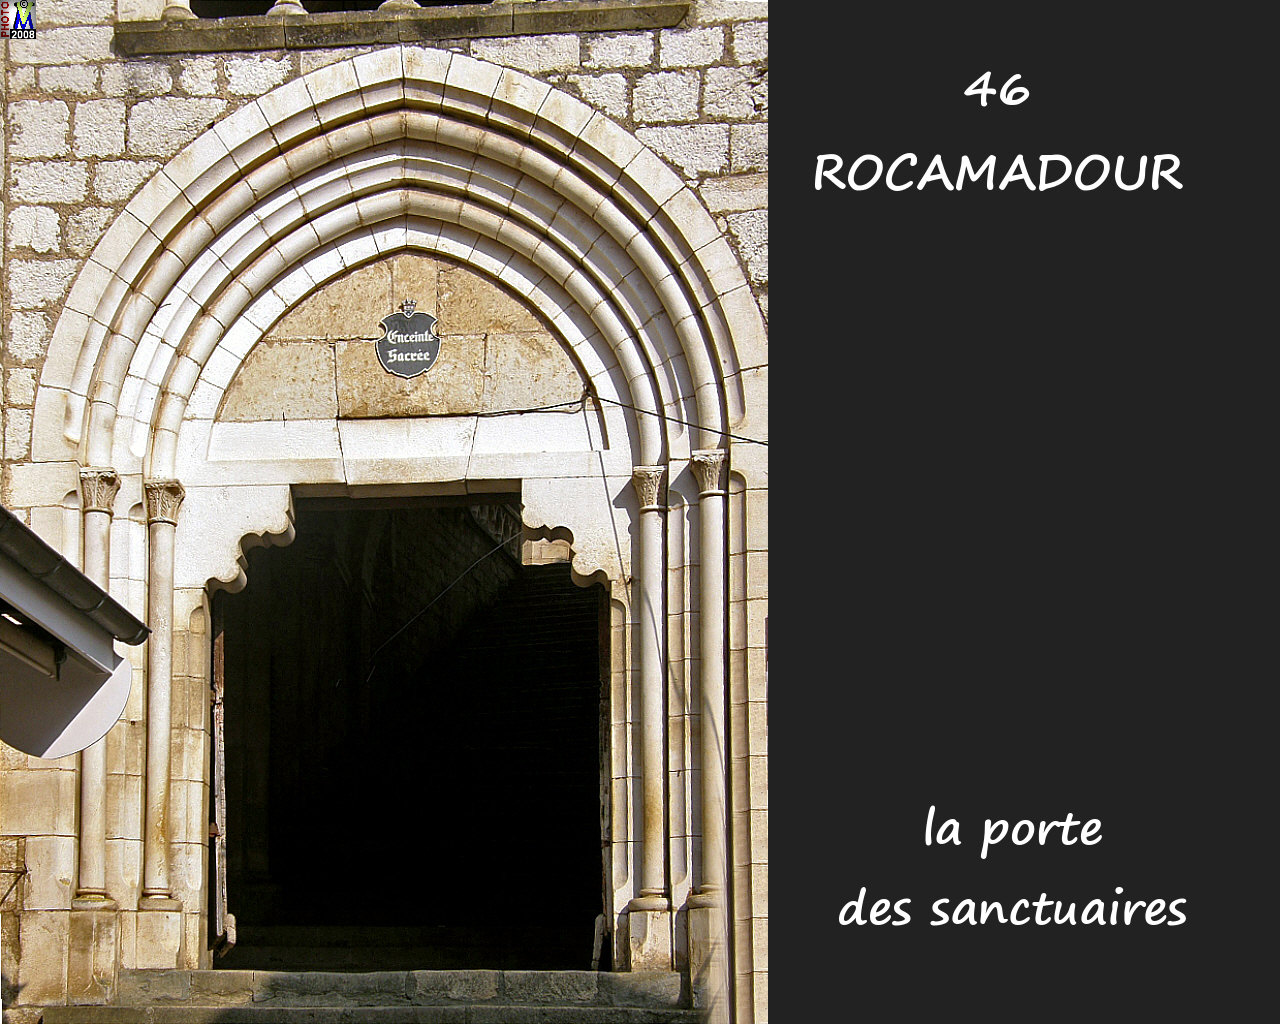 46ROCAMADOUR_sanctuaires_152.jpg